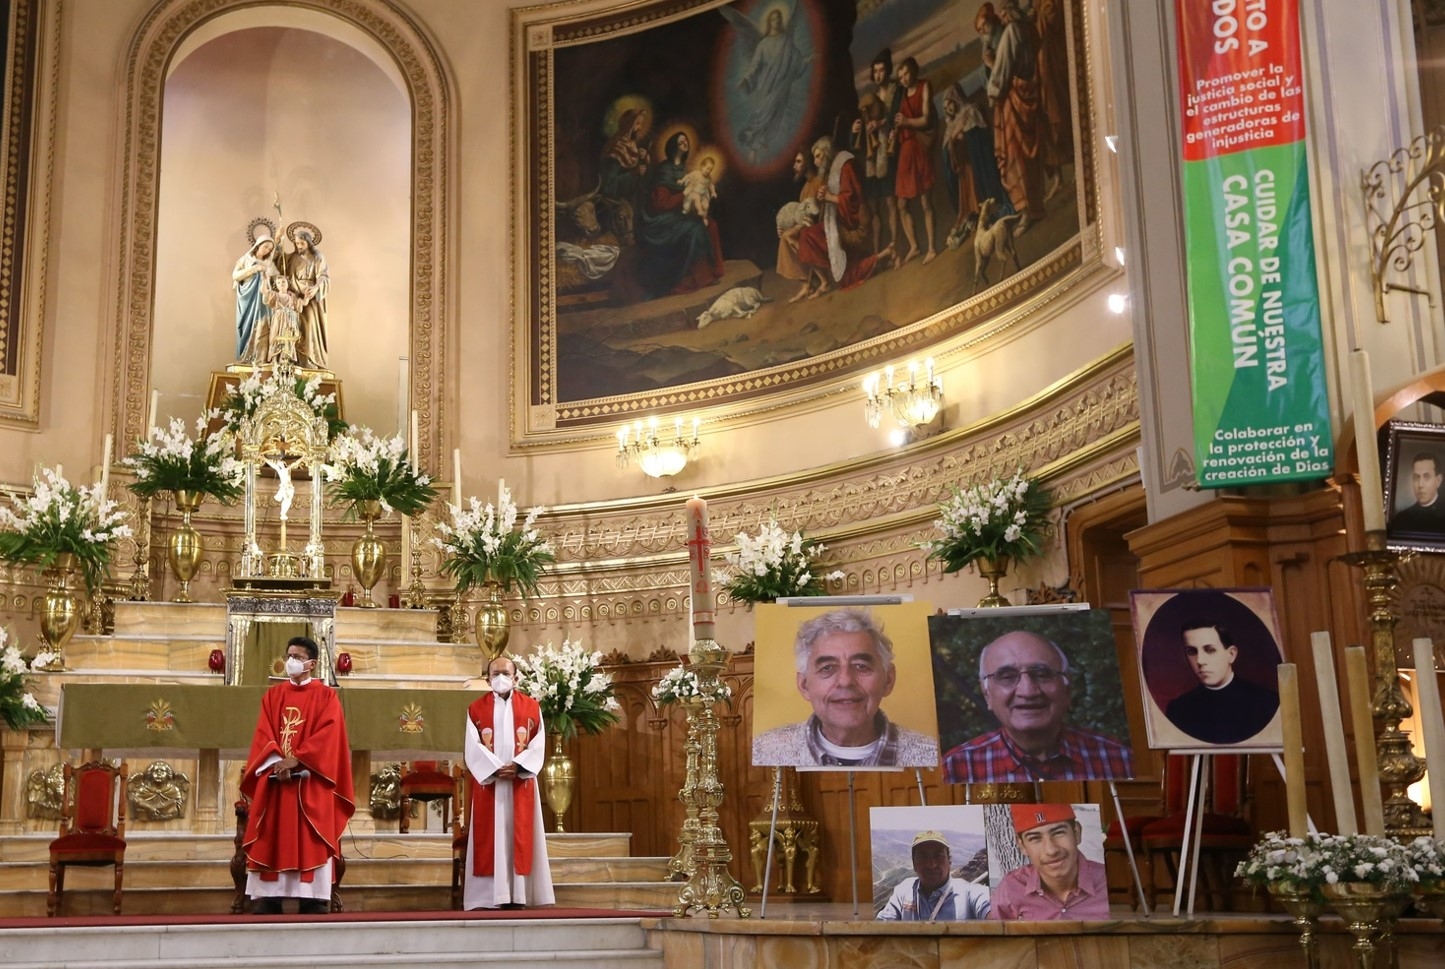 Curas también son víctimas de extorsión por parte del crimen, reporta Centro Católico Multimedial